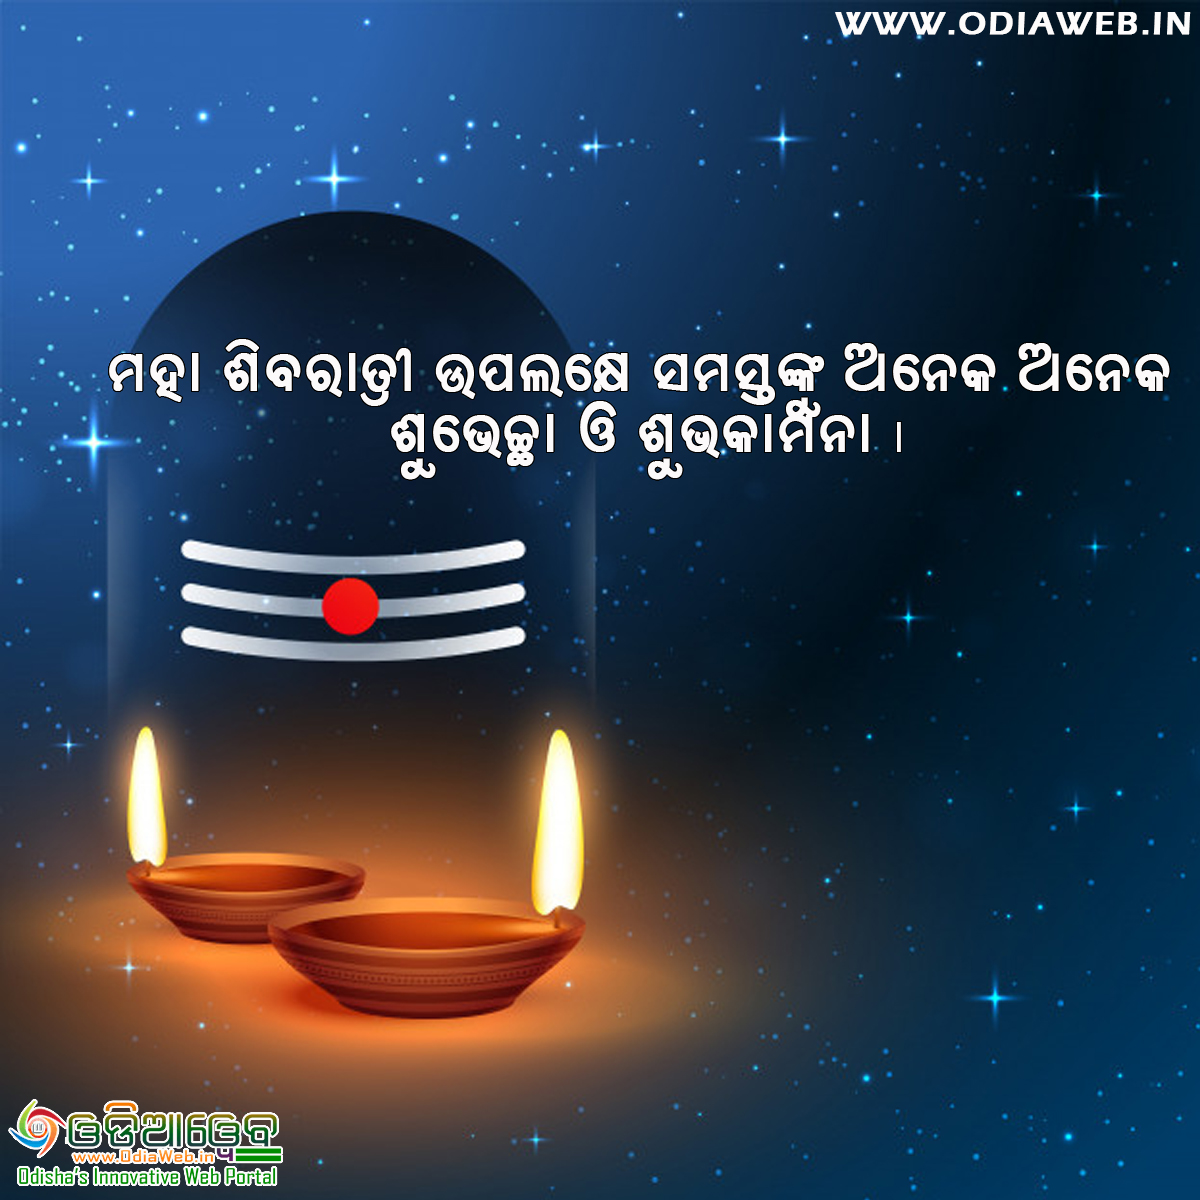 Maha Shivaratri Wishes in Odia